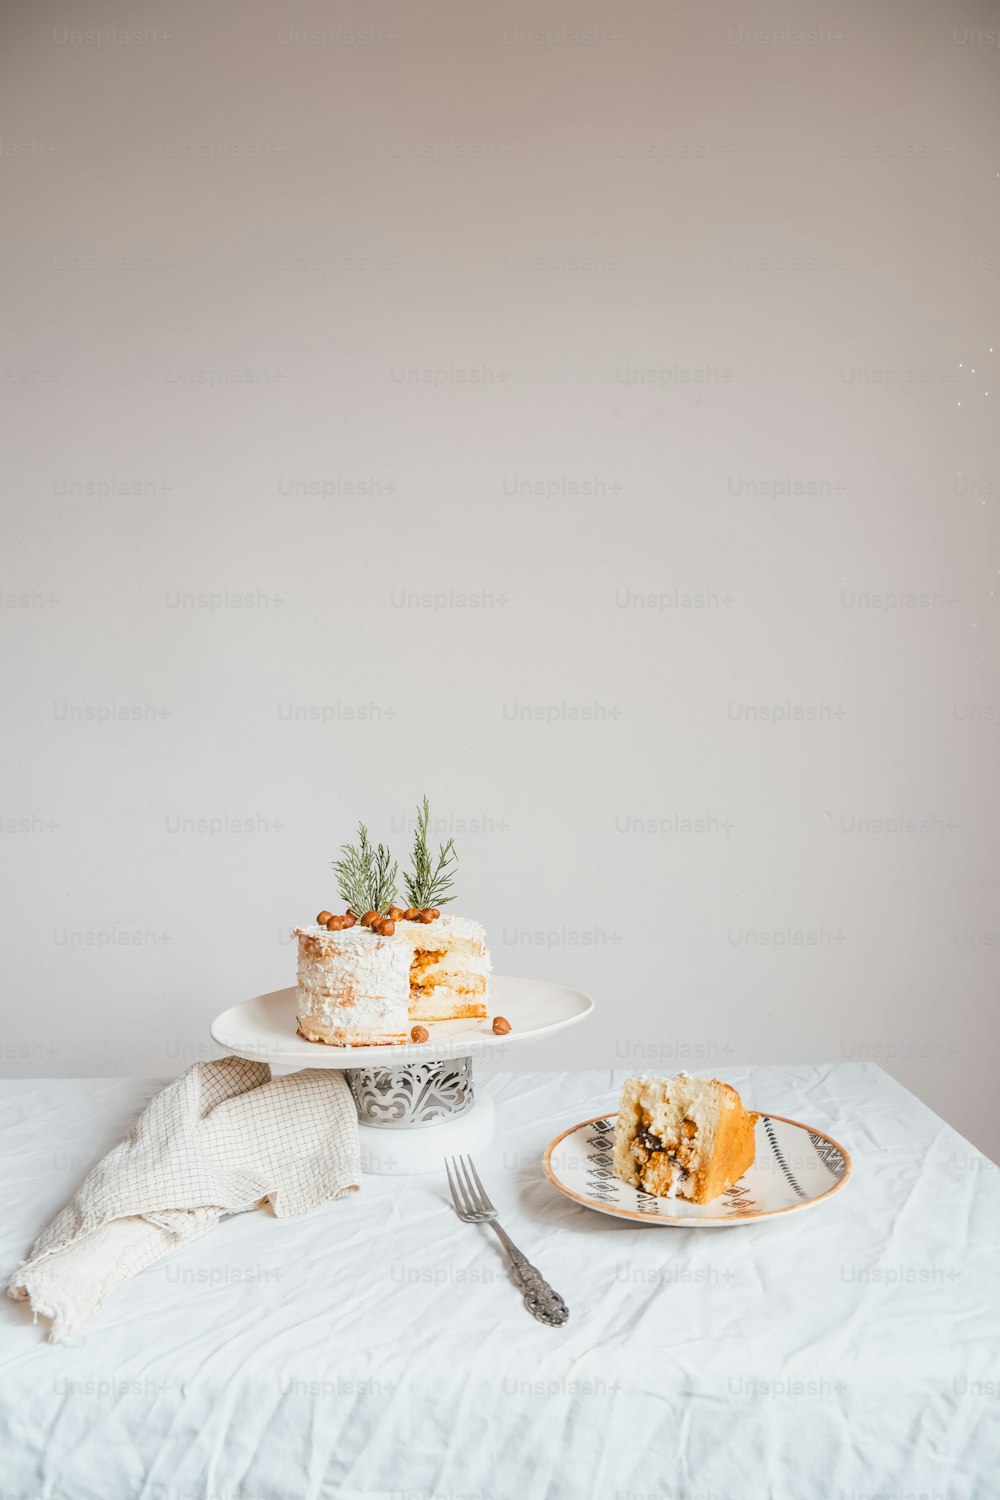 una mesa blanca cubierta con un pastel y un tenedor